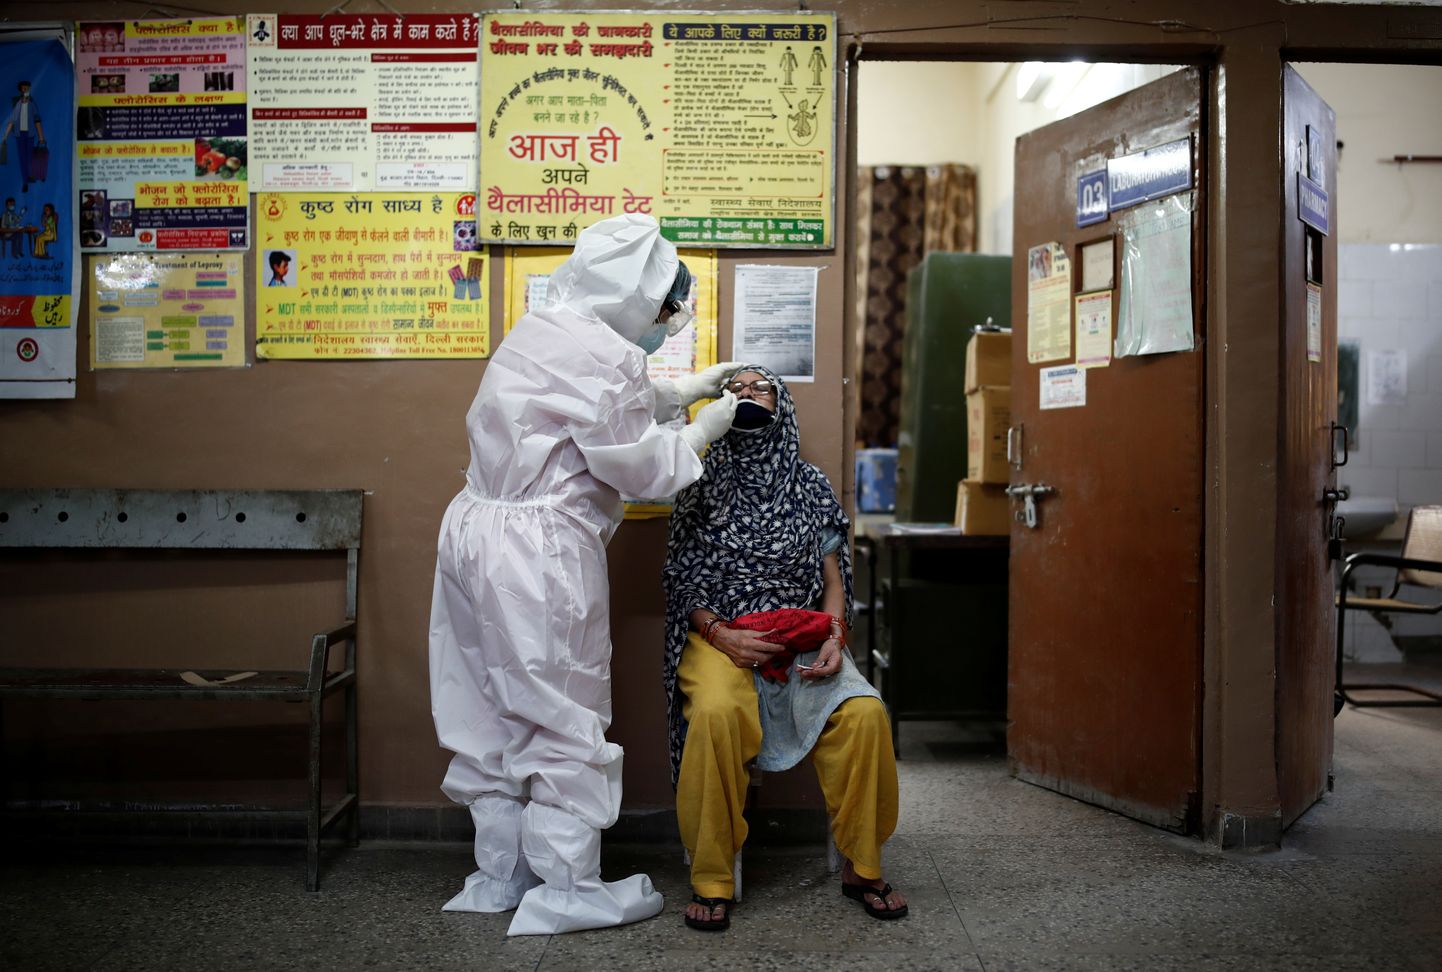 Kaitseülikonnas tervisetöötaja kohalikus tervisekeskuses koroonaproovi võtmas. New Delhi, India, 7. august 2020.